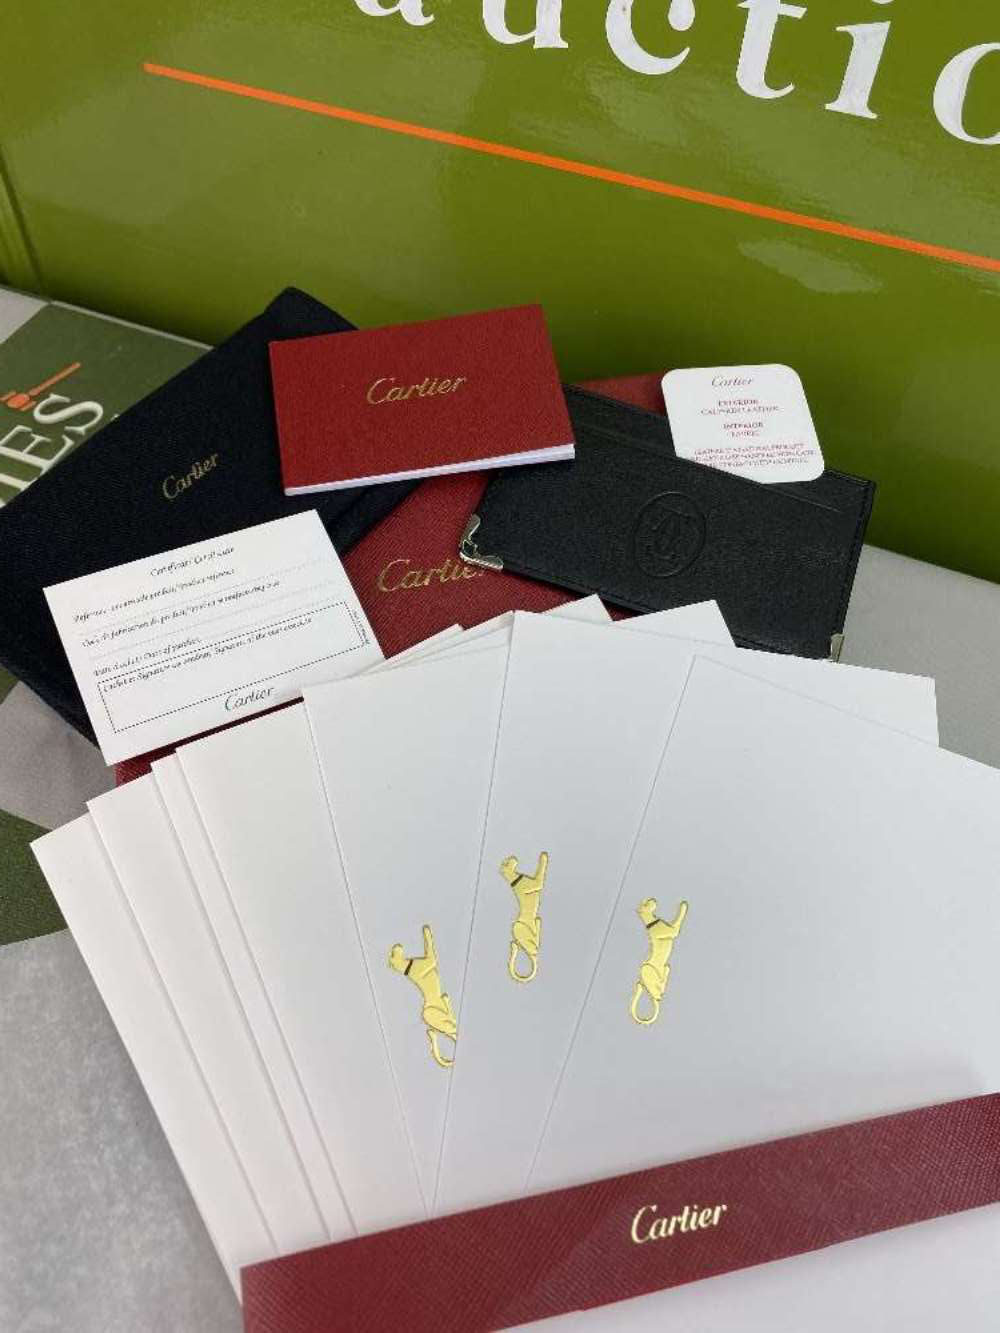 Cartier Paris- Credit Card Leather Holder & Letter Set - Image 4 of 4